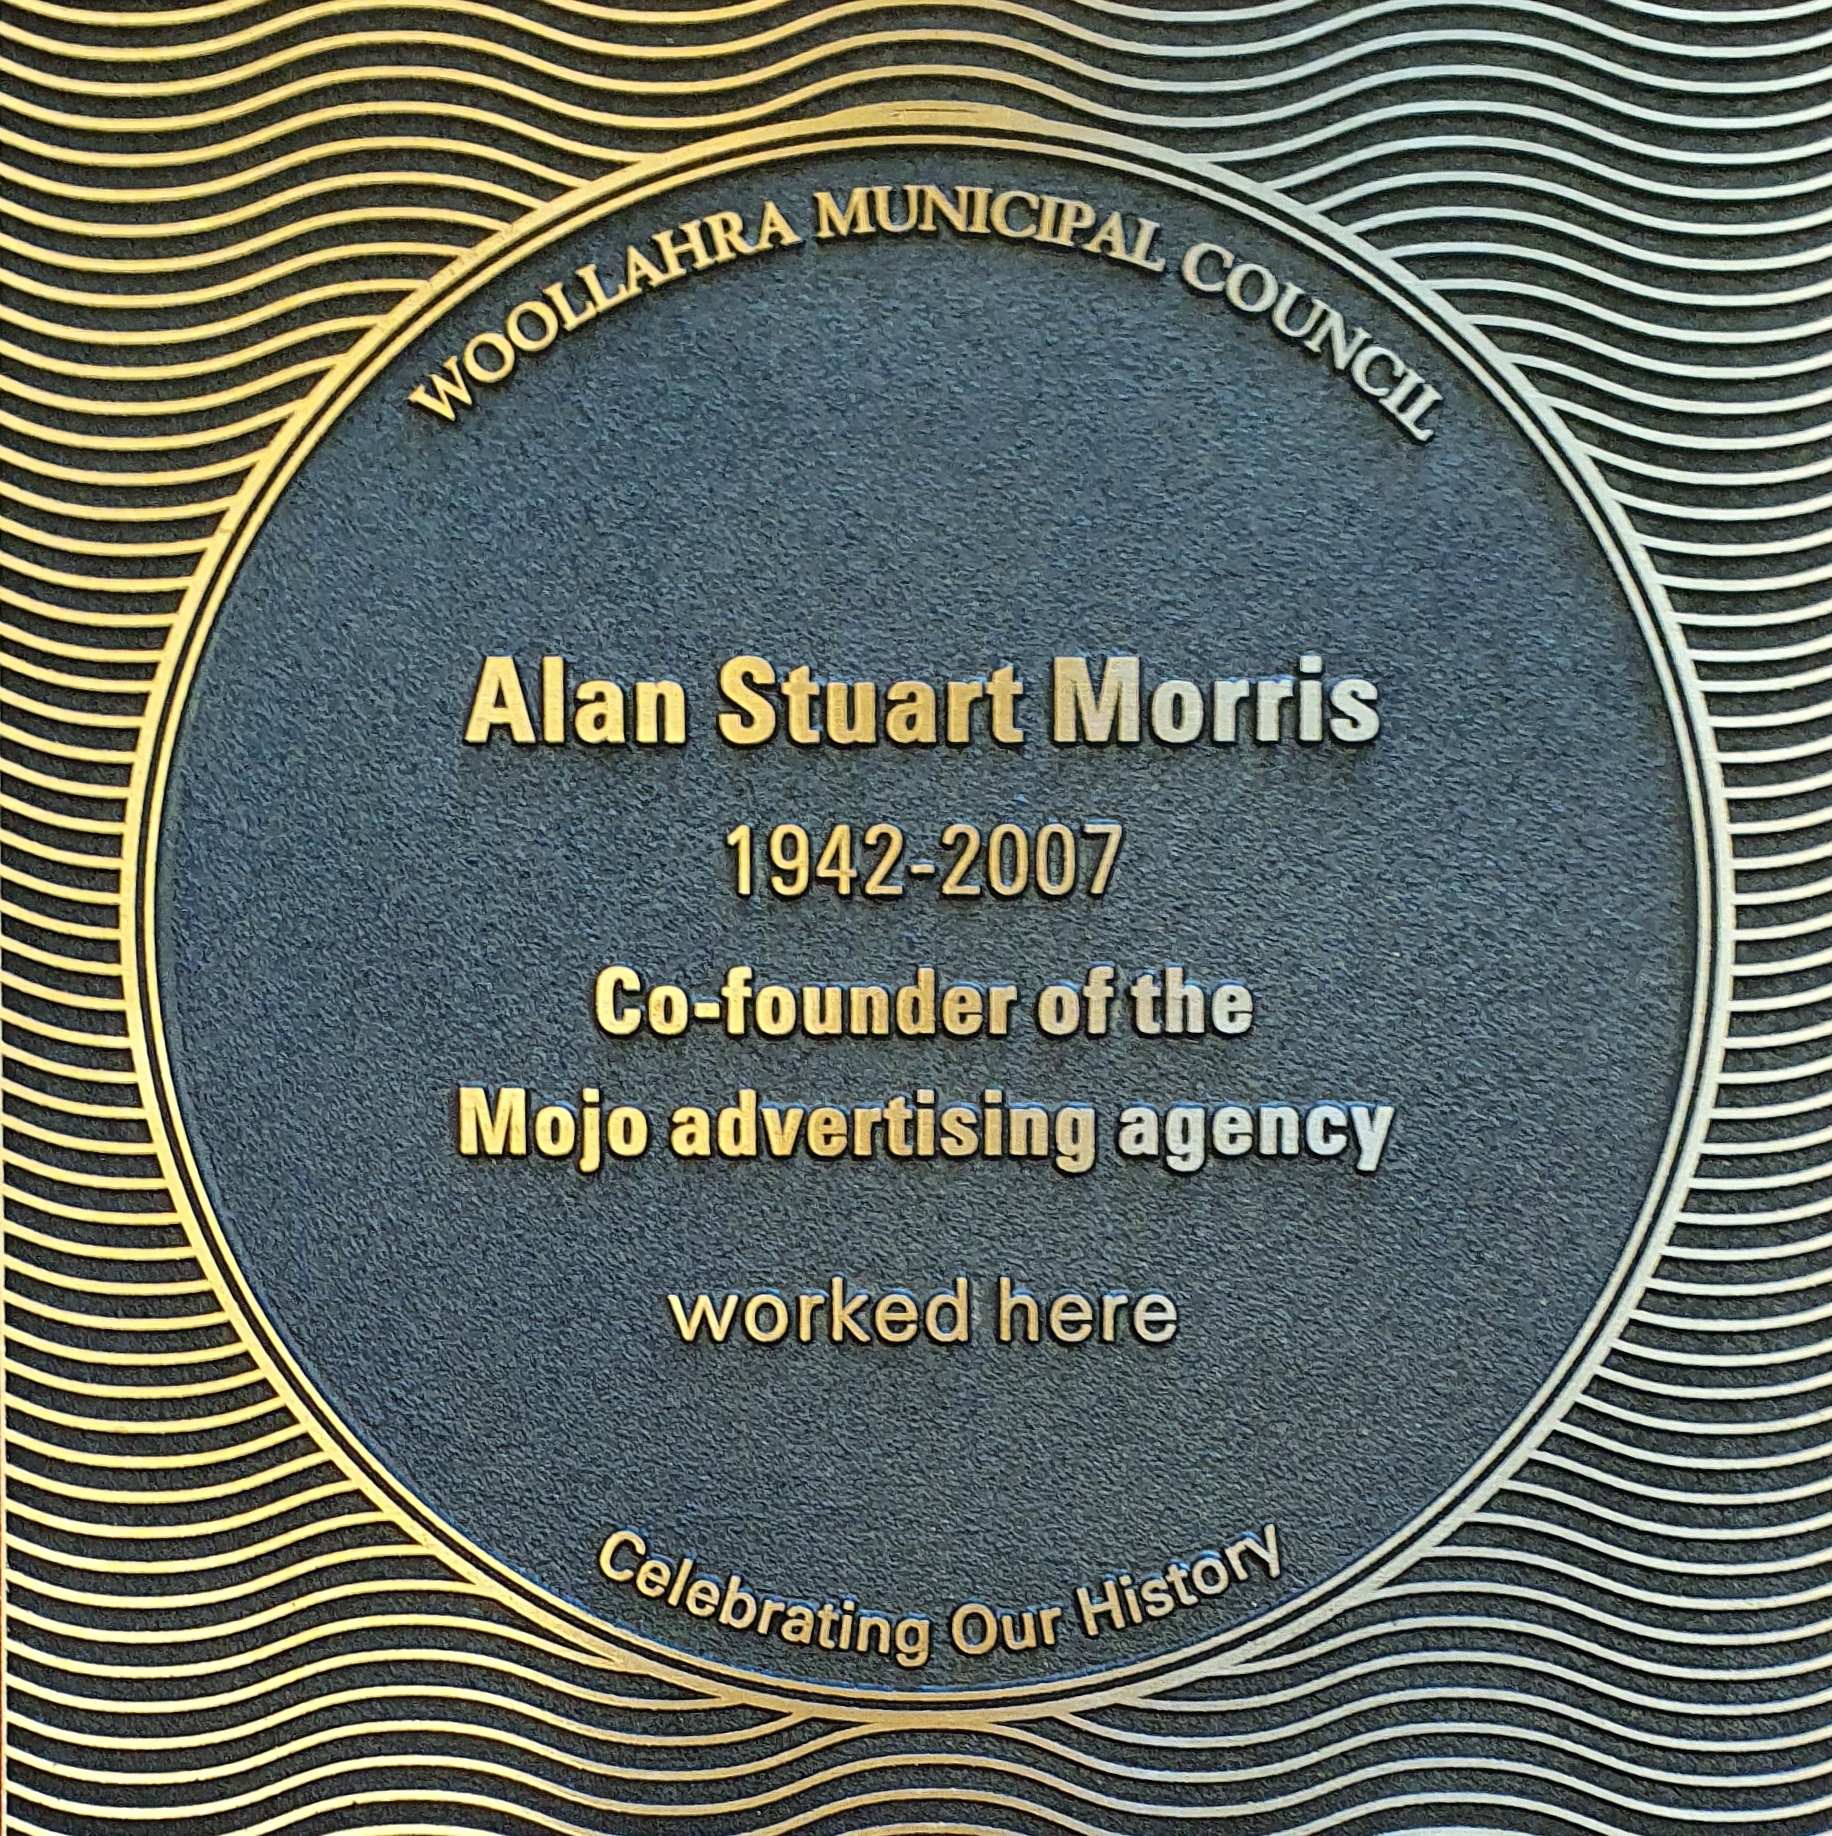 Alan Stuart Morris plaque